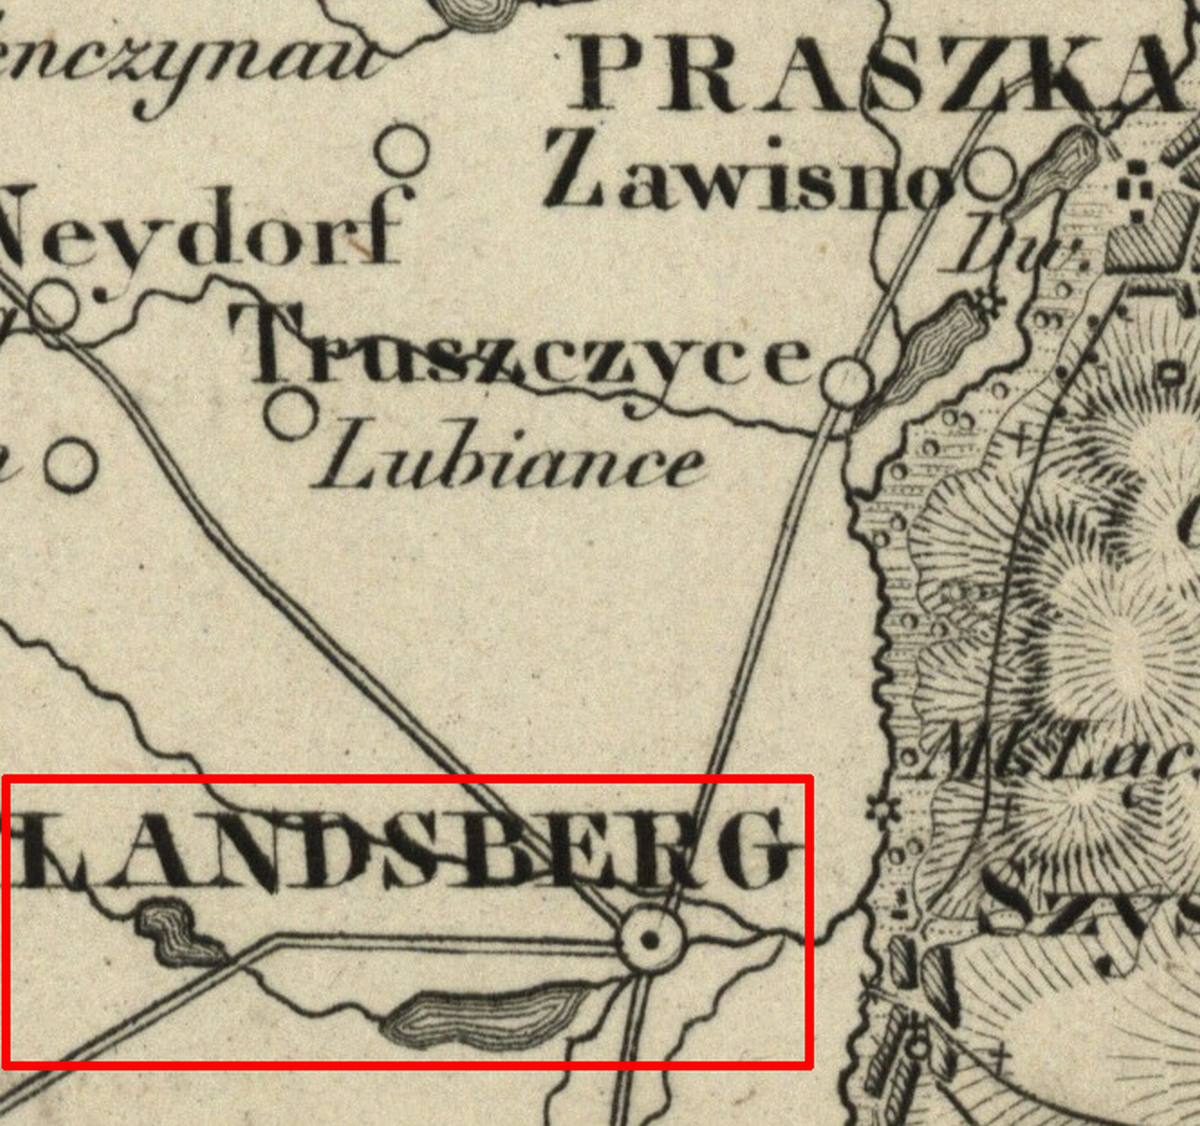 okolice Praszki na topograficznej karcie Królestwa Polskiego — Landsberg — 1839 »» 1843 [Praszka-MR11987] (1839 »» 1843)